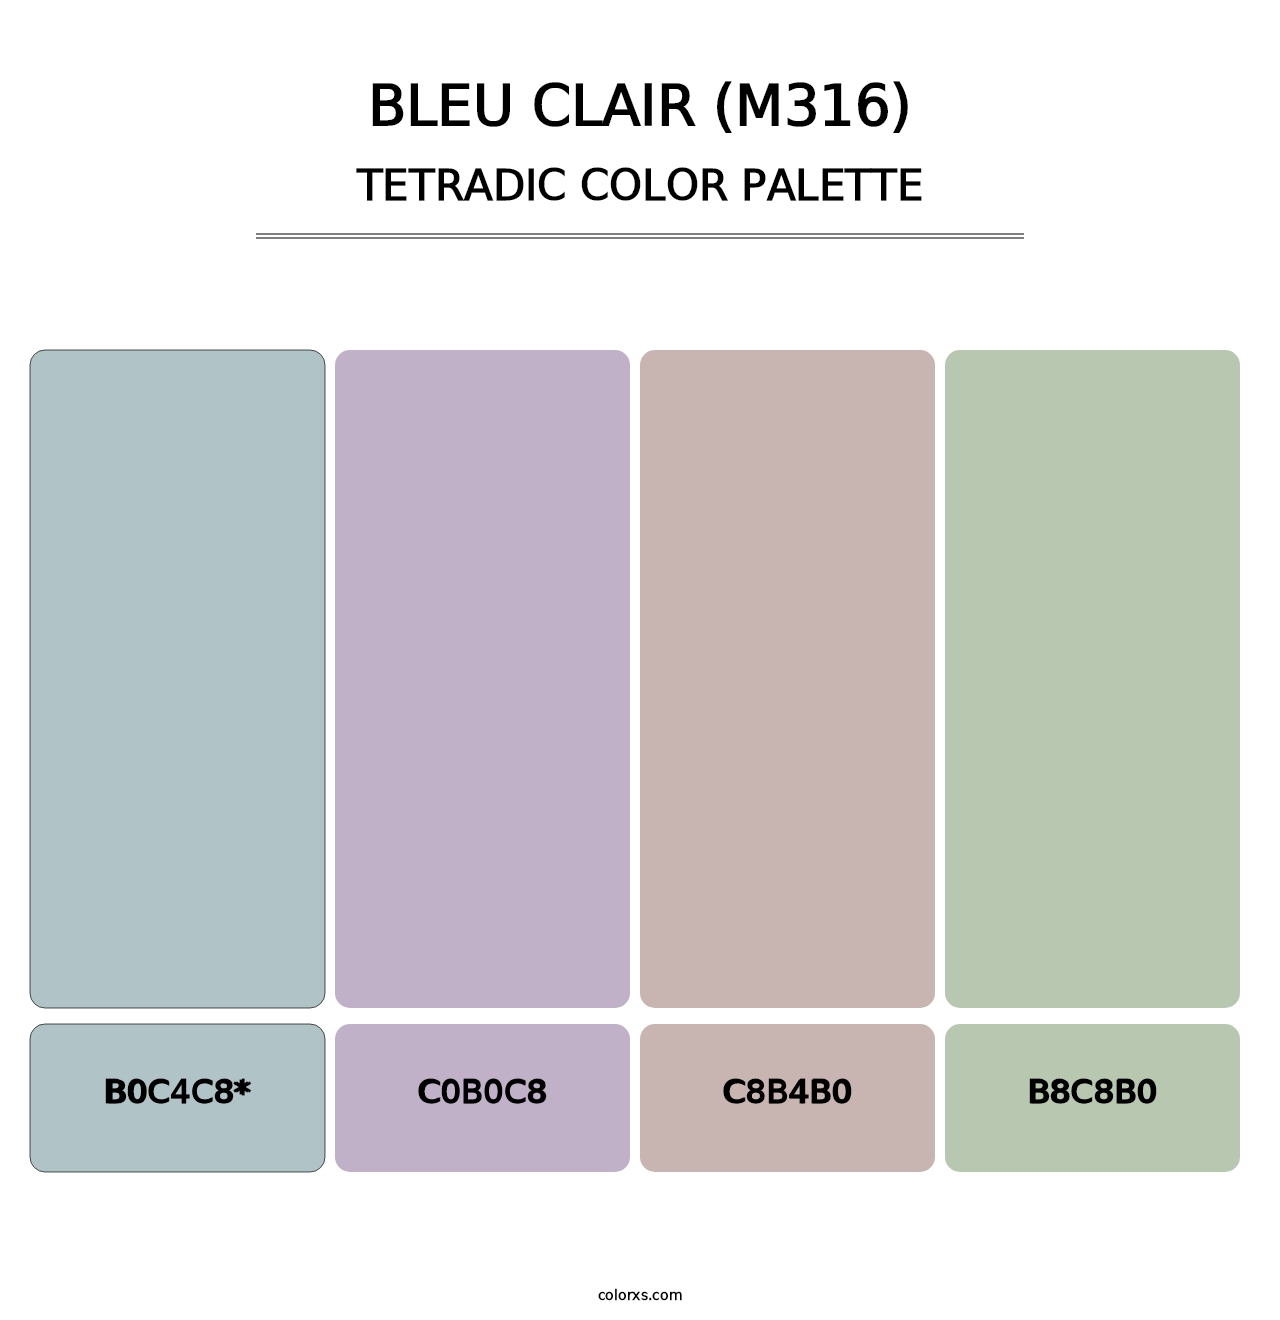 Bleu Clair (M316) - Tetradic Color Palette